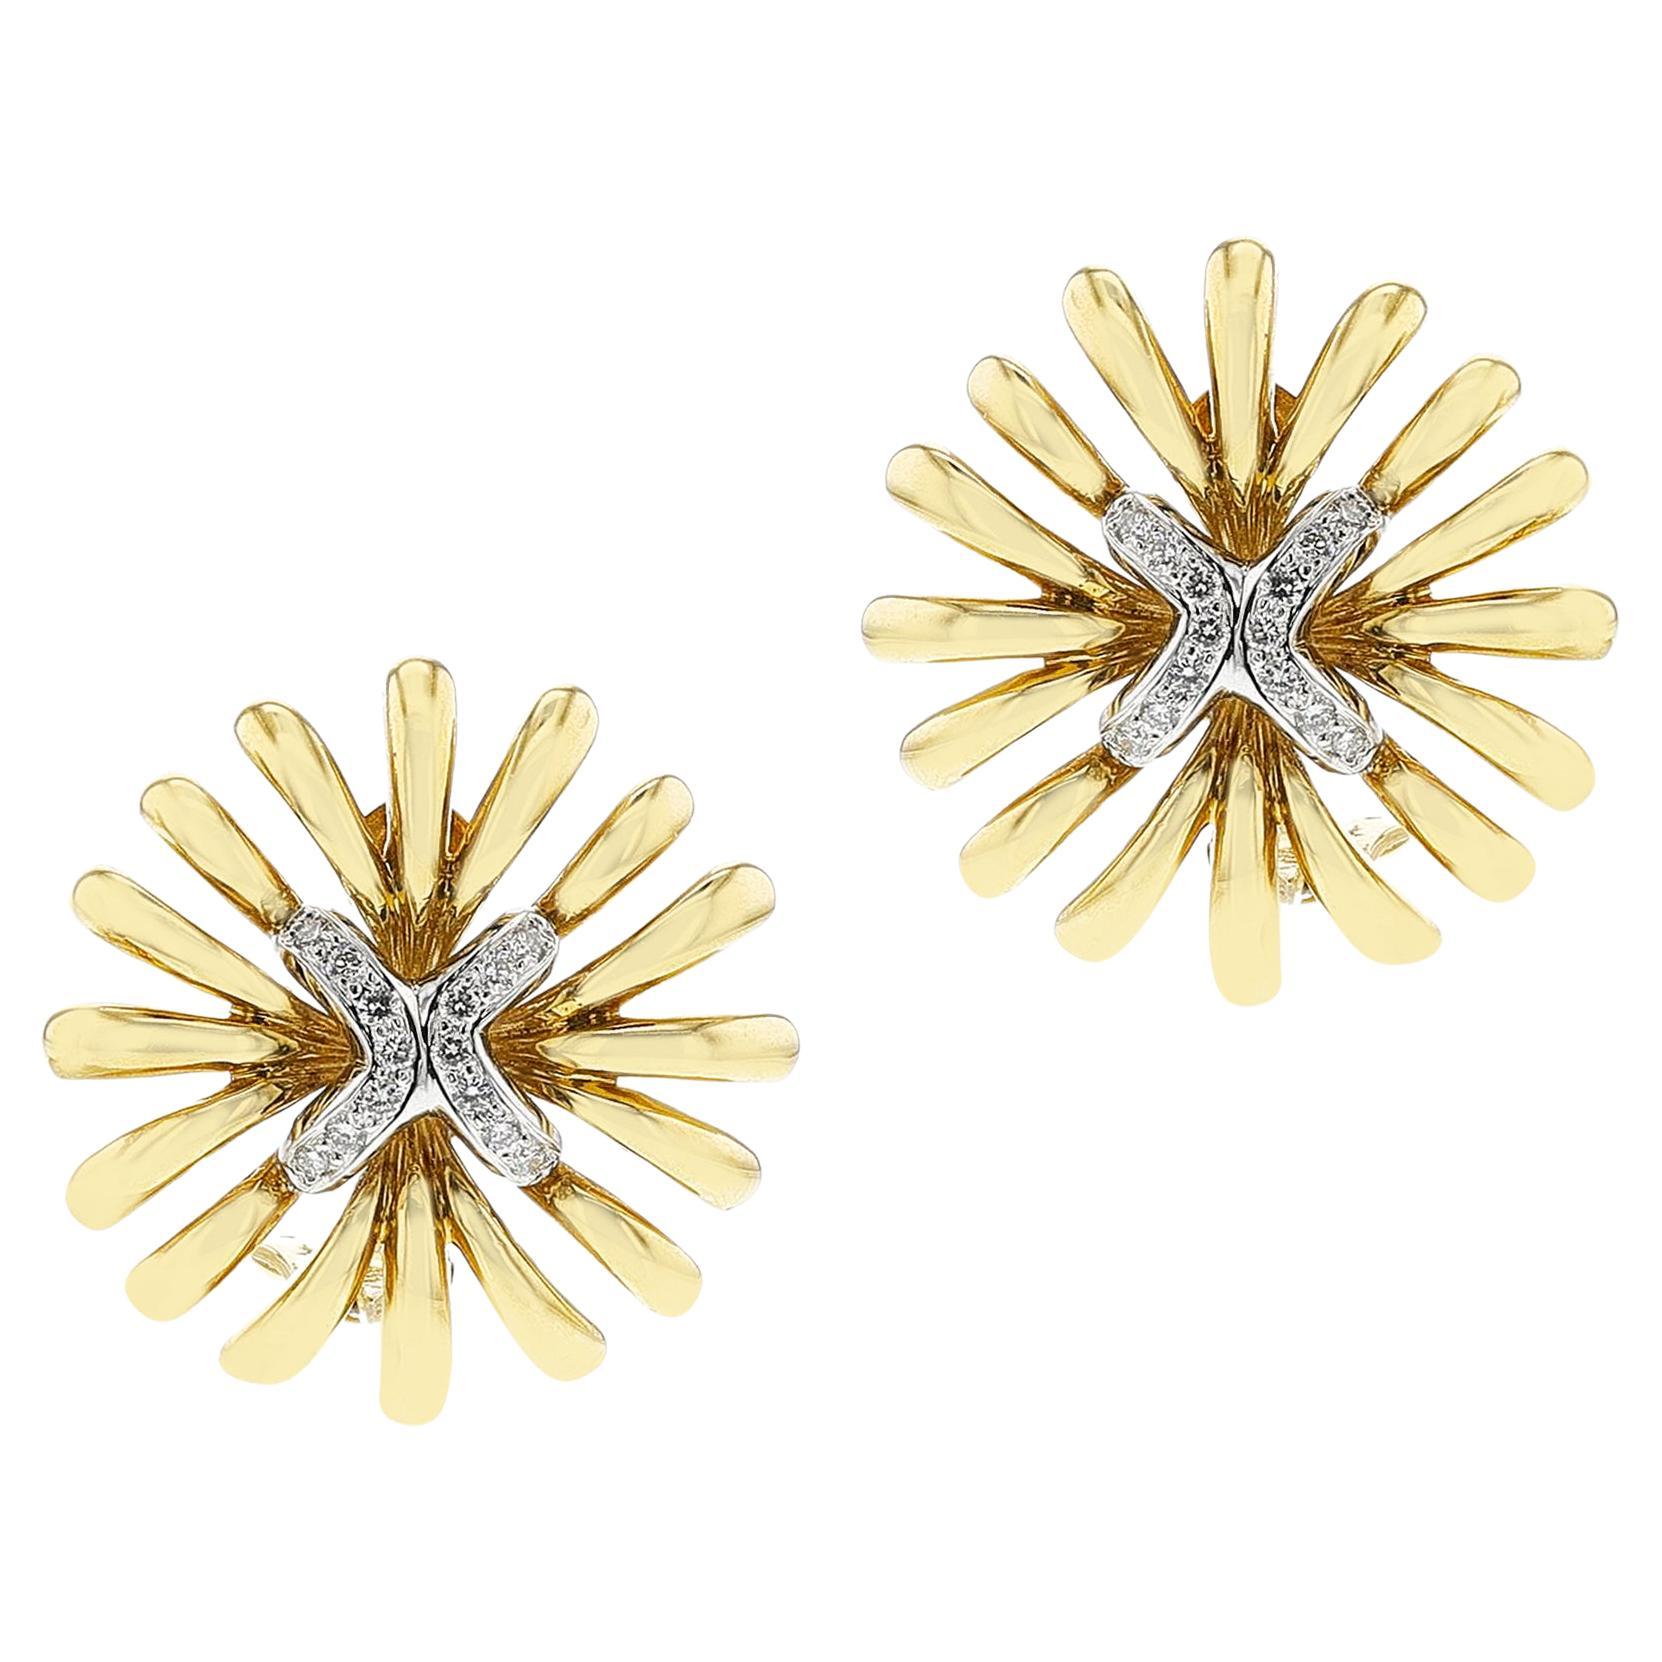 Gold and Diamond Flower Earrings, 18k